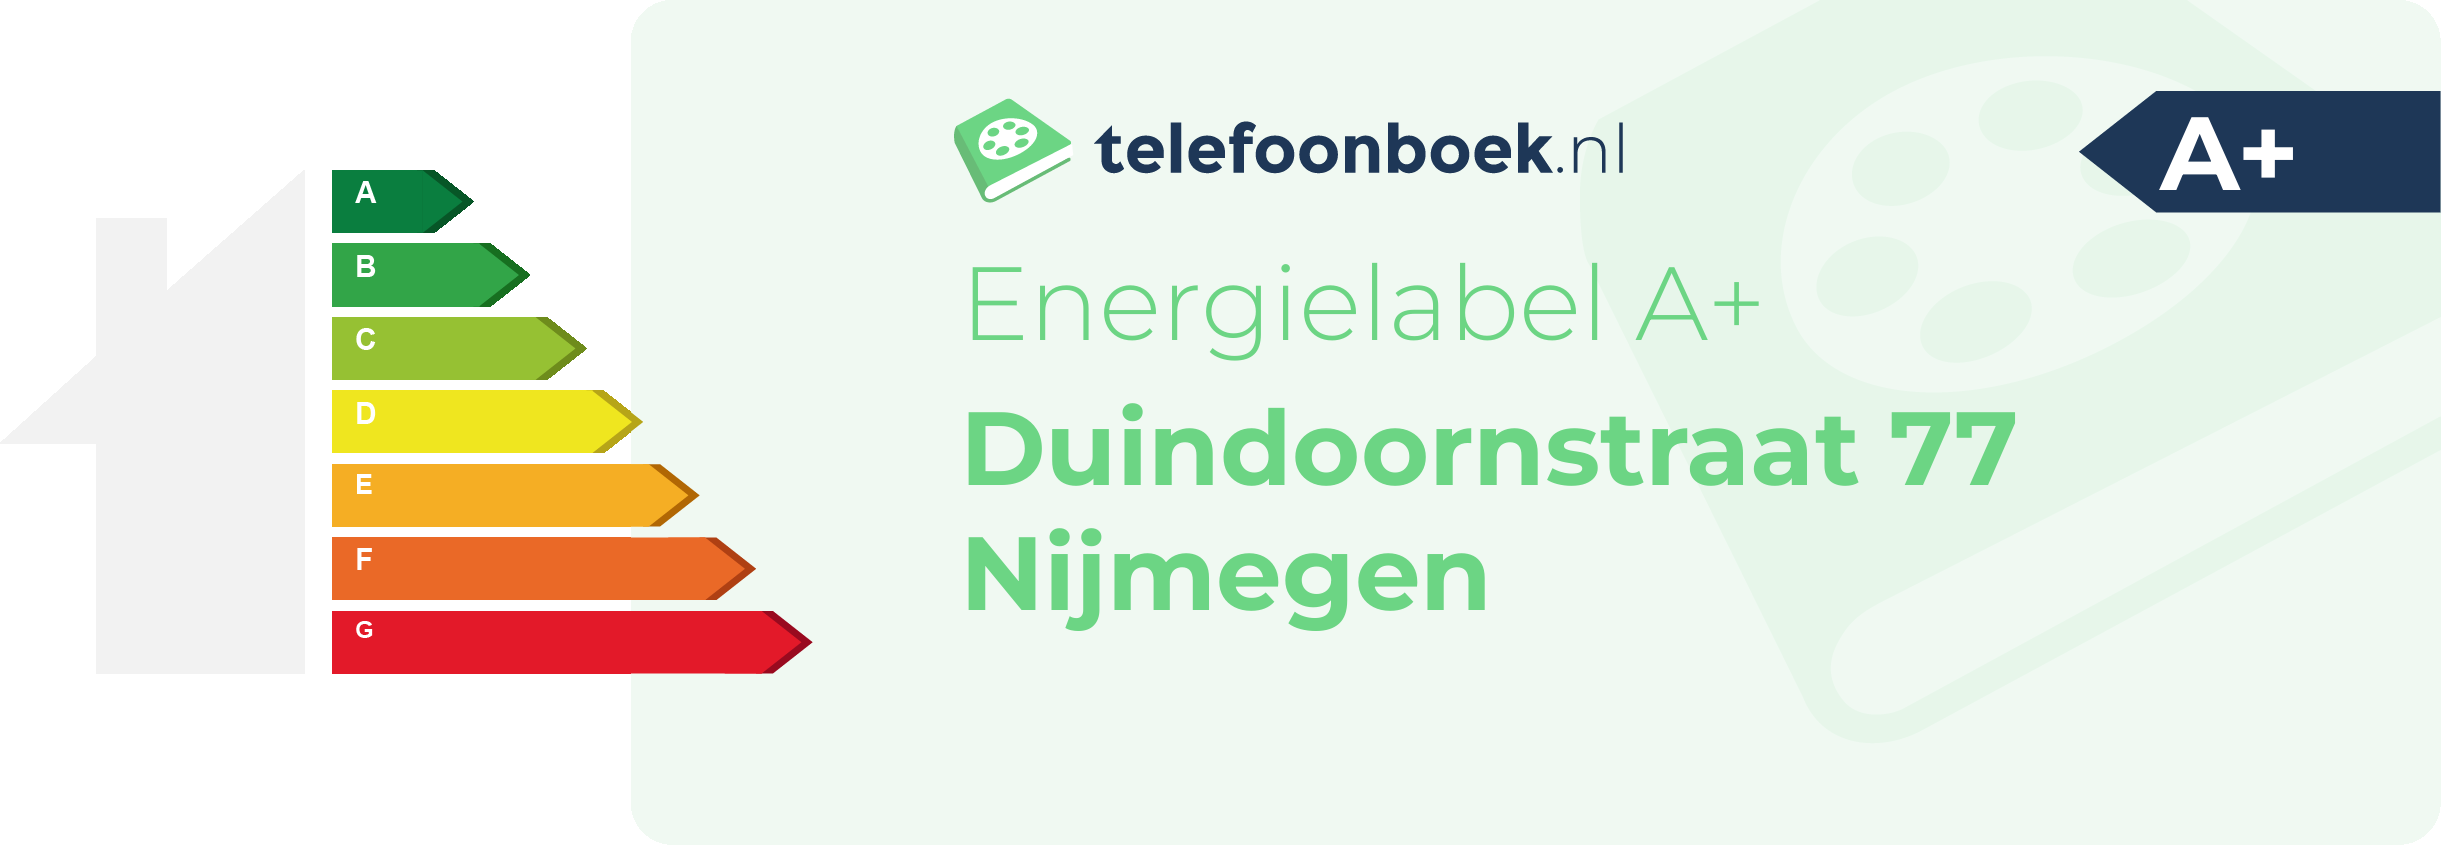 Energielabel Duindoornstraat 77 Nijmegen